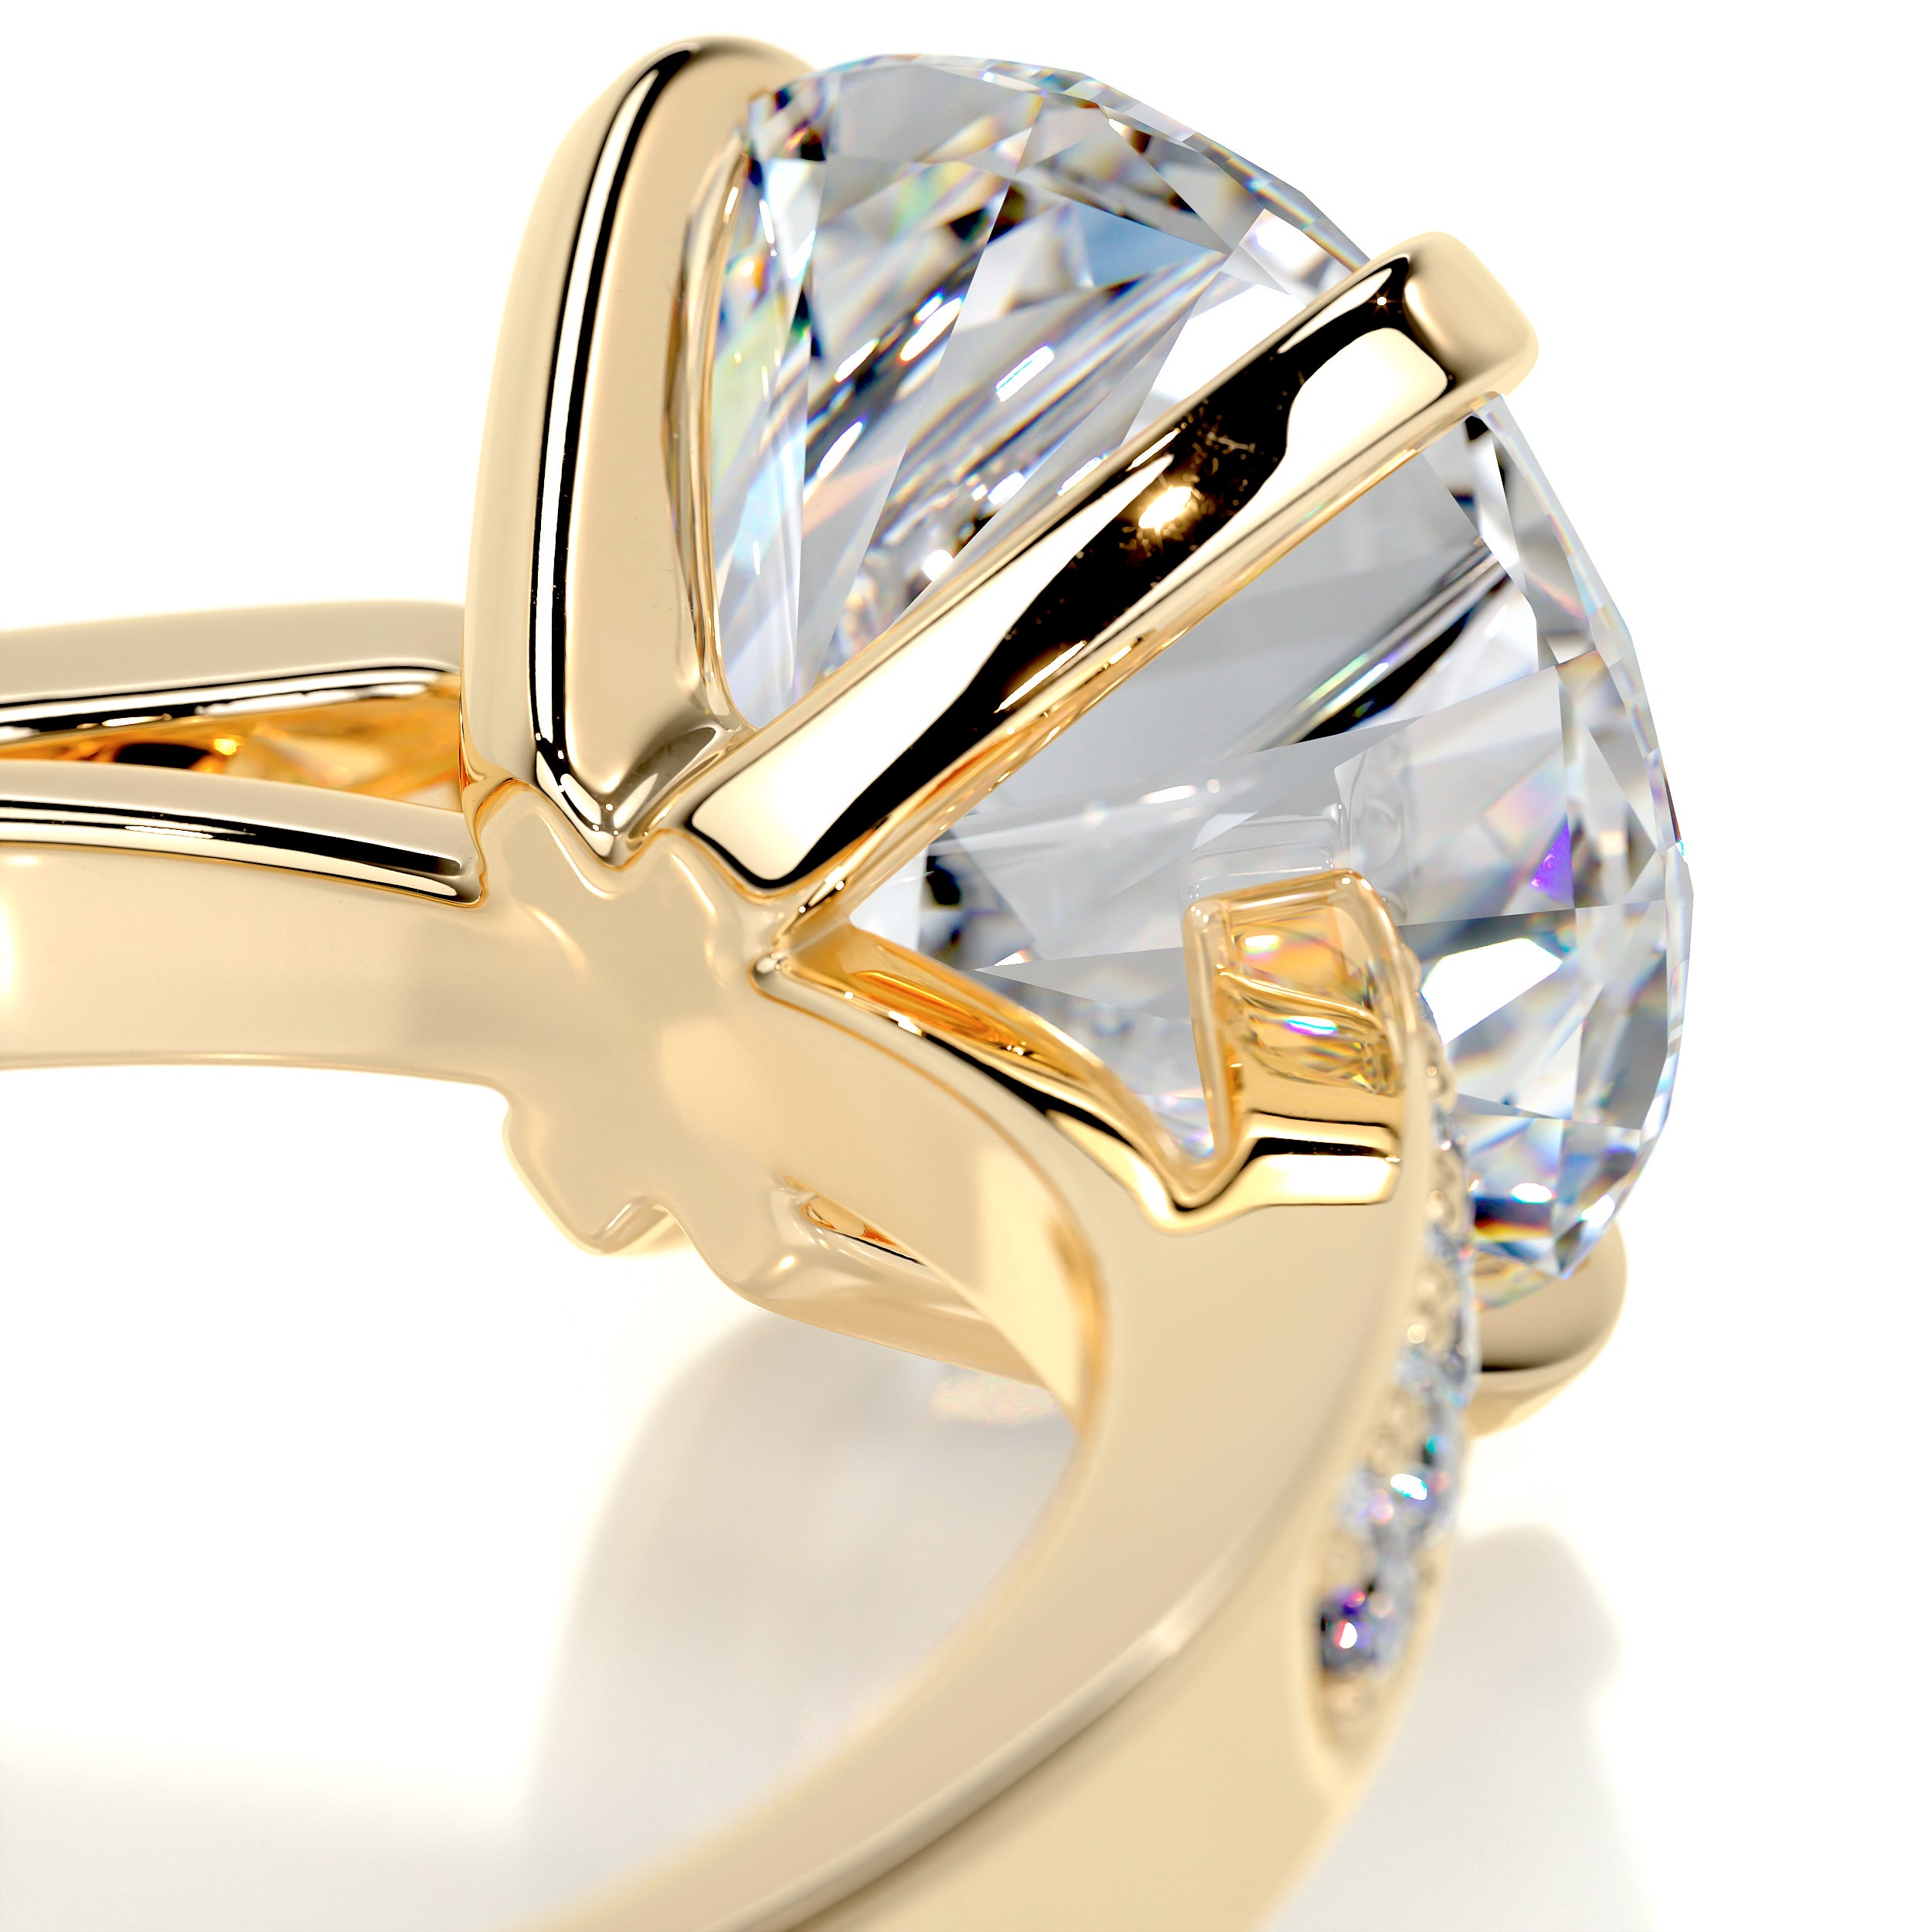 Margaret Moissanite & Diamonds Ring -18K Yellow Gold